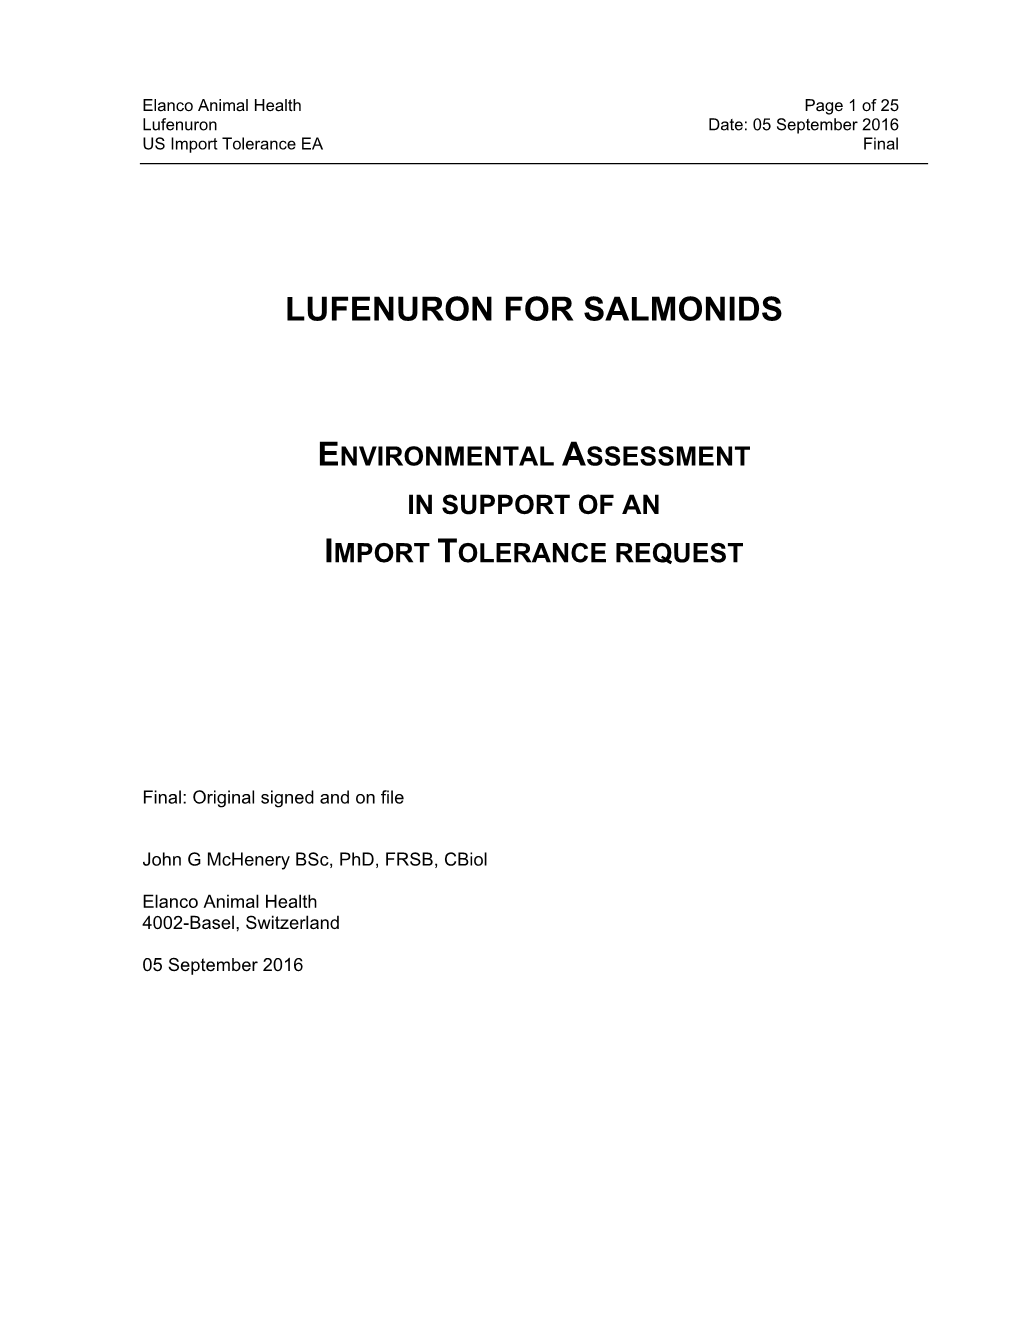 Lufenuron for Salmonids